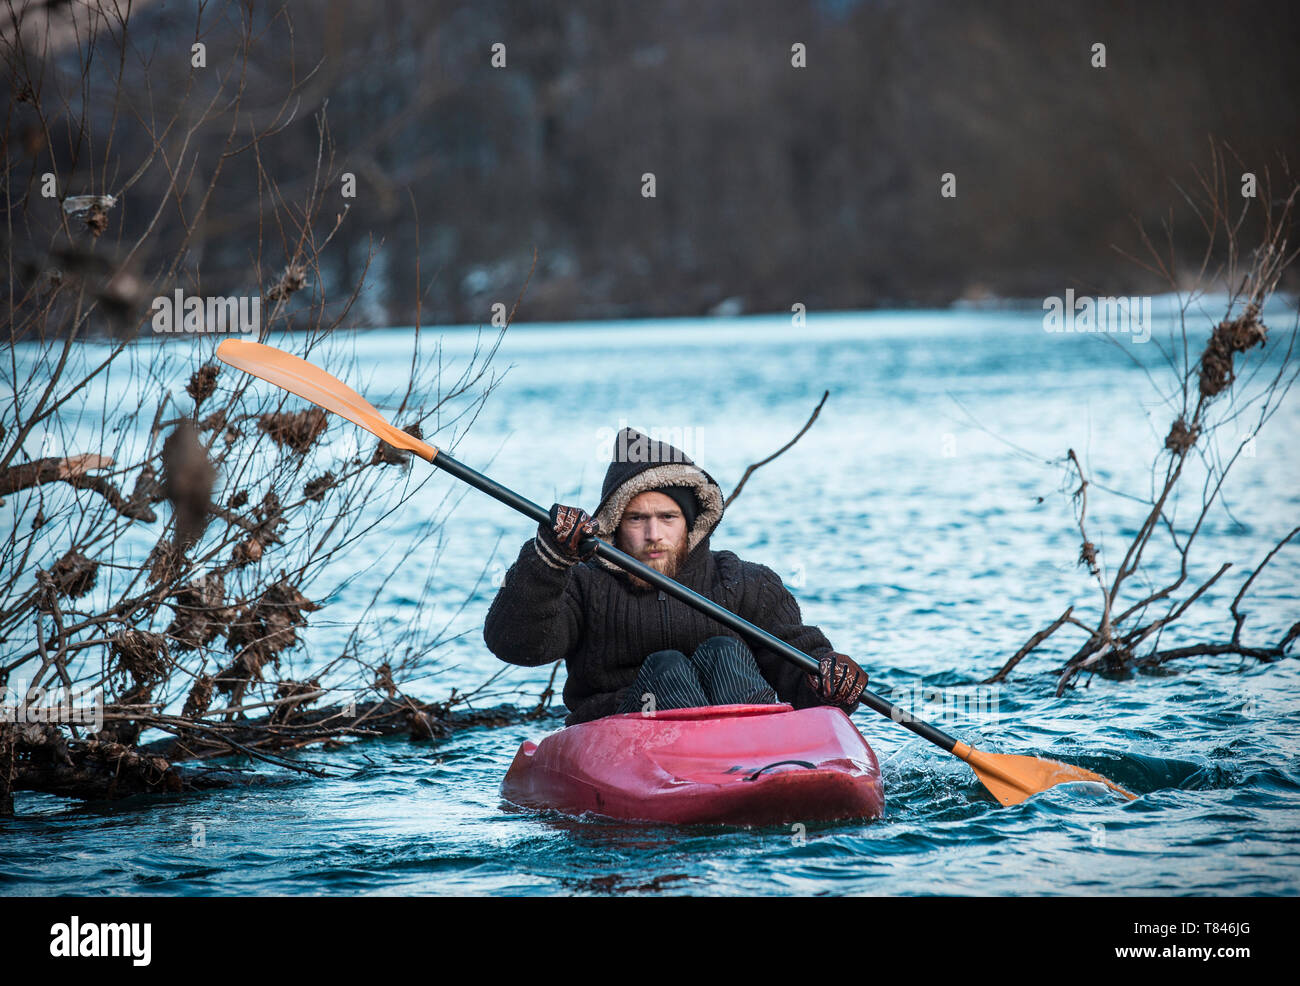 Jeune homme du kayak sur la rivière en hiver, portrait, Domodossola, Piemonte, Italie Banque D'Images